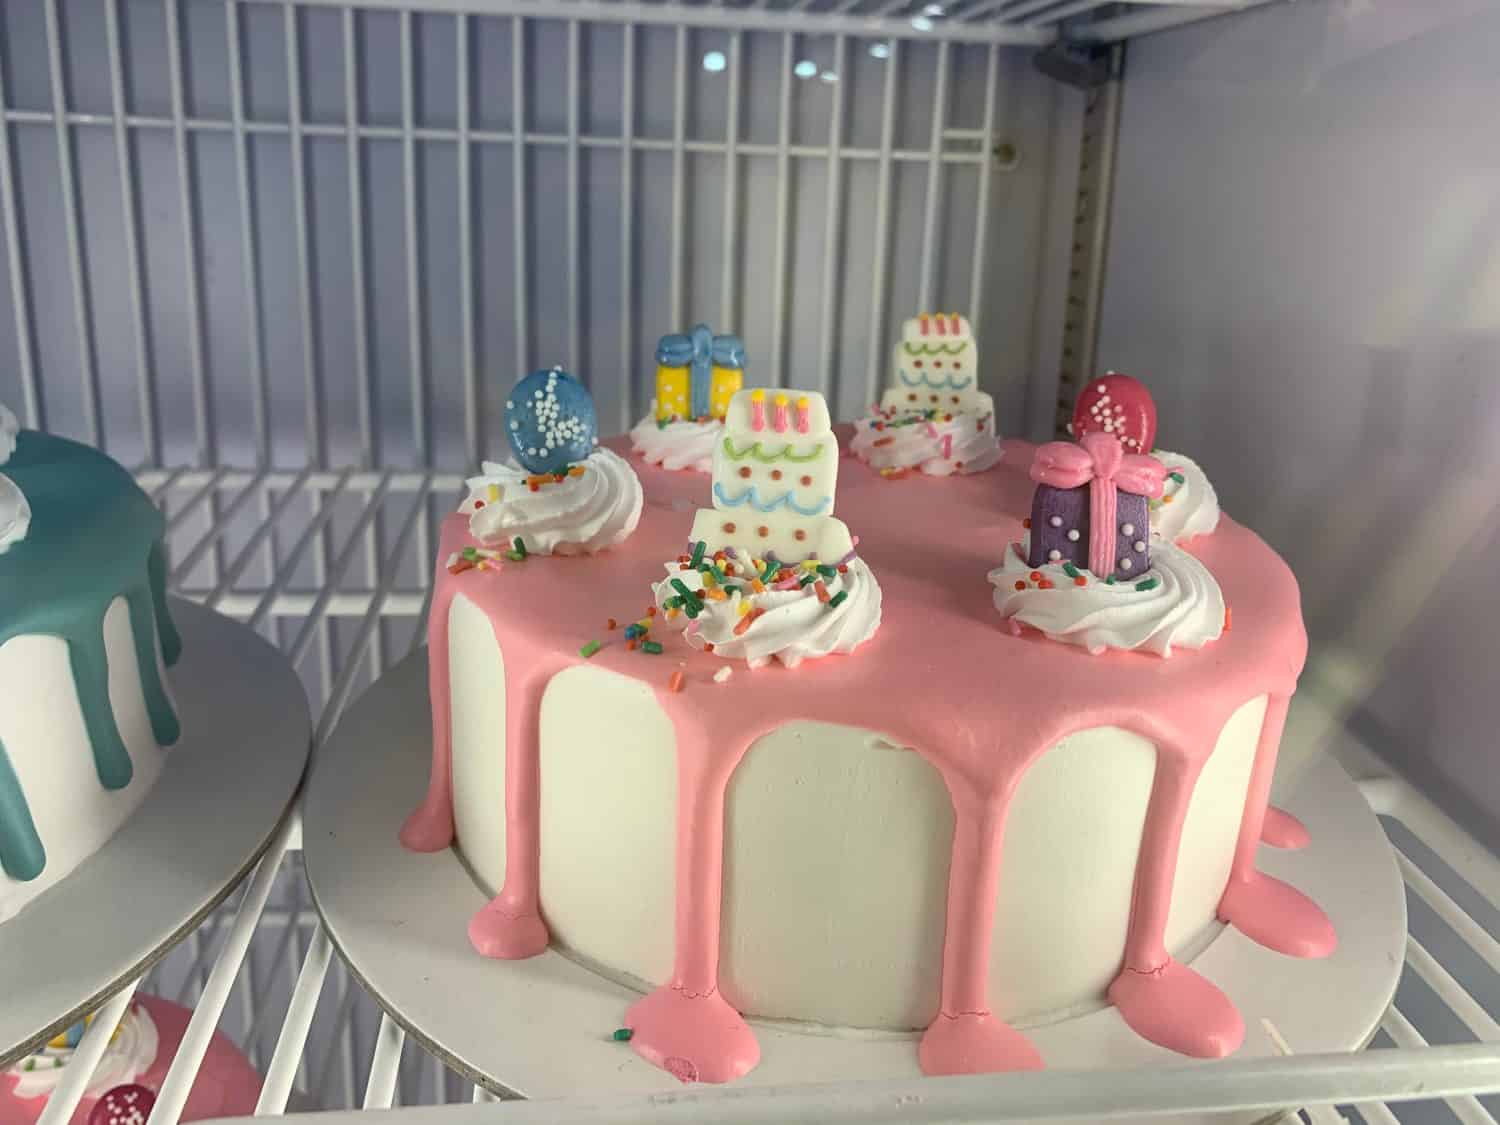 Dairy Queen’s  Birthday Ice Cream Cake